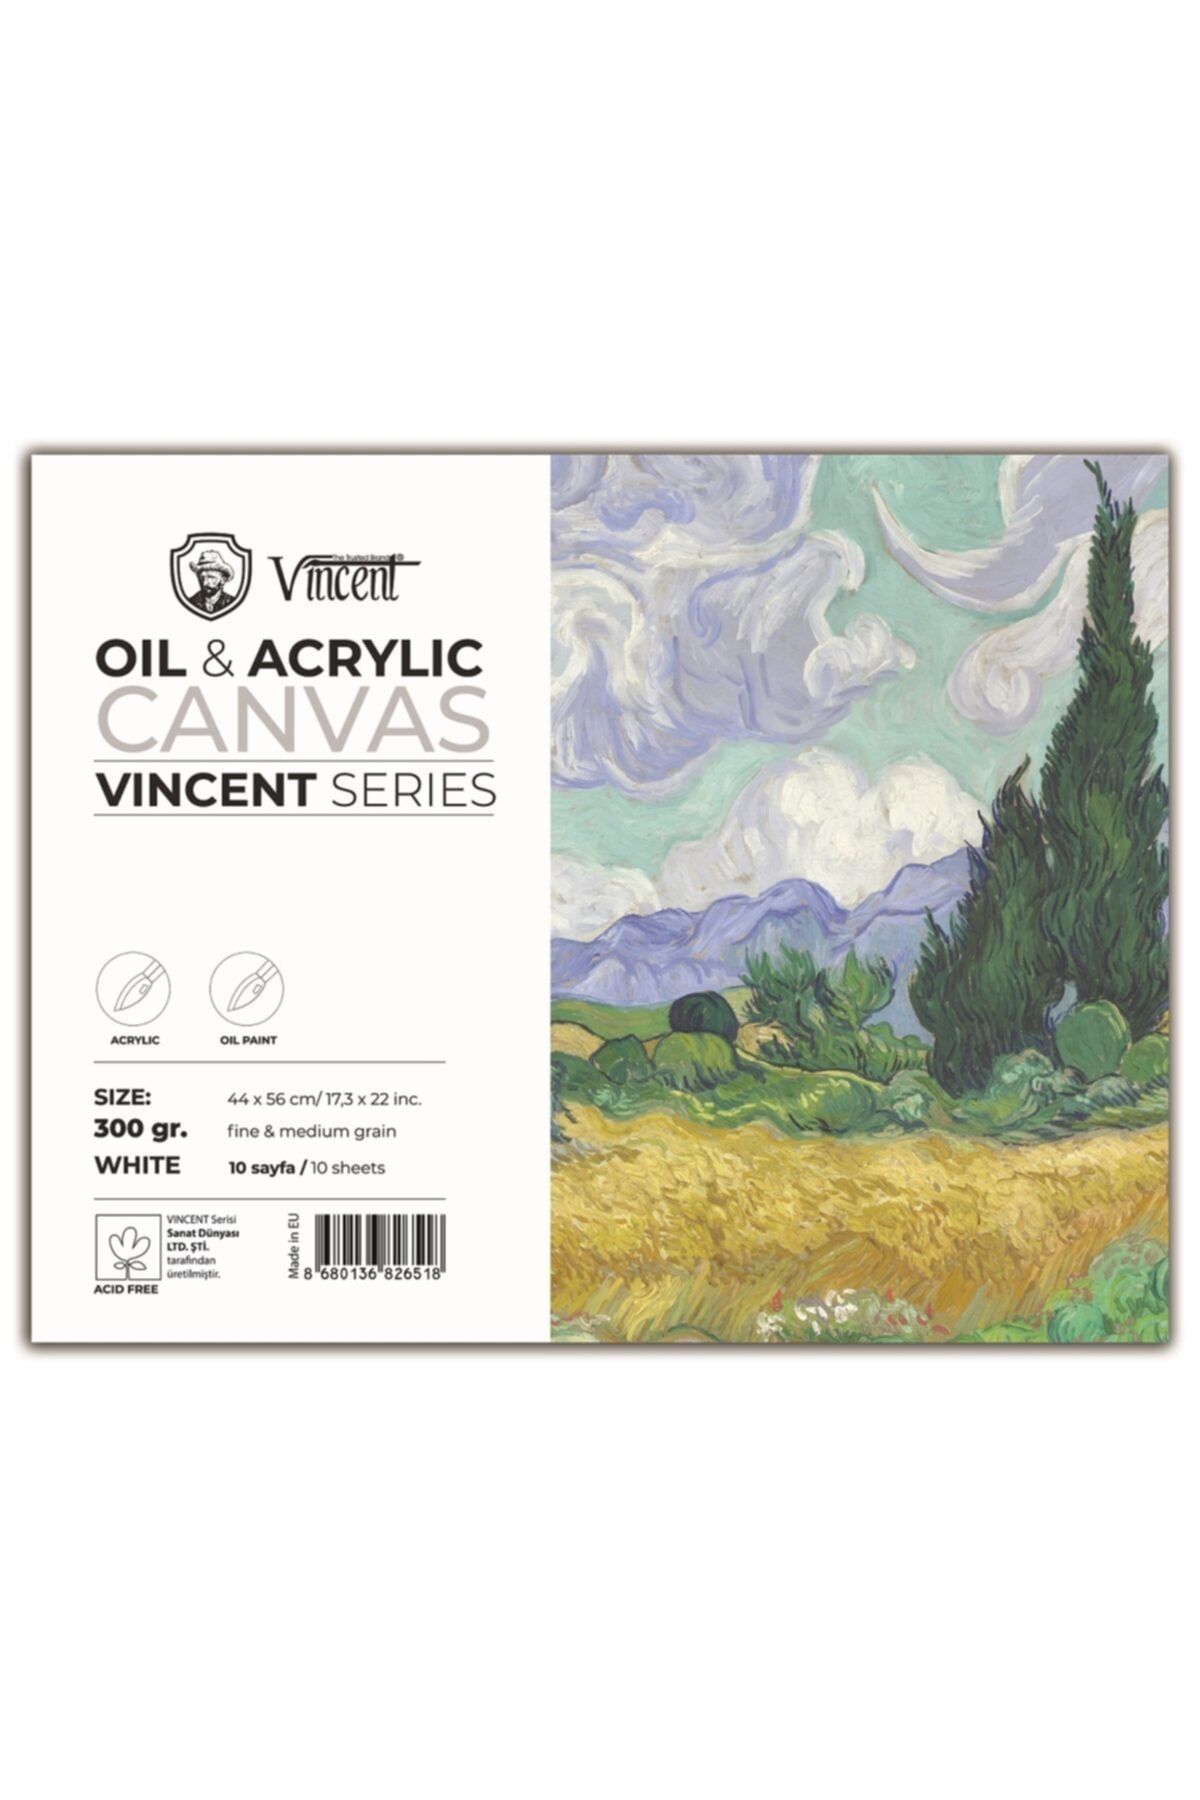 Vincent Vıncent Oıl Acrylıc Canvas Whıte 300gr 44cmx56cm 10 Sayfa Yağlı Ve Akrilik Boya Defteri